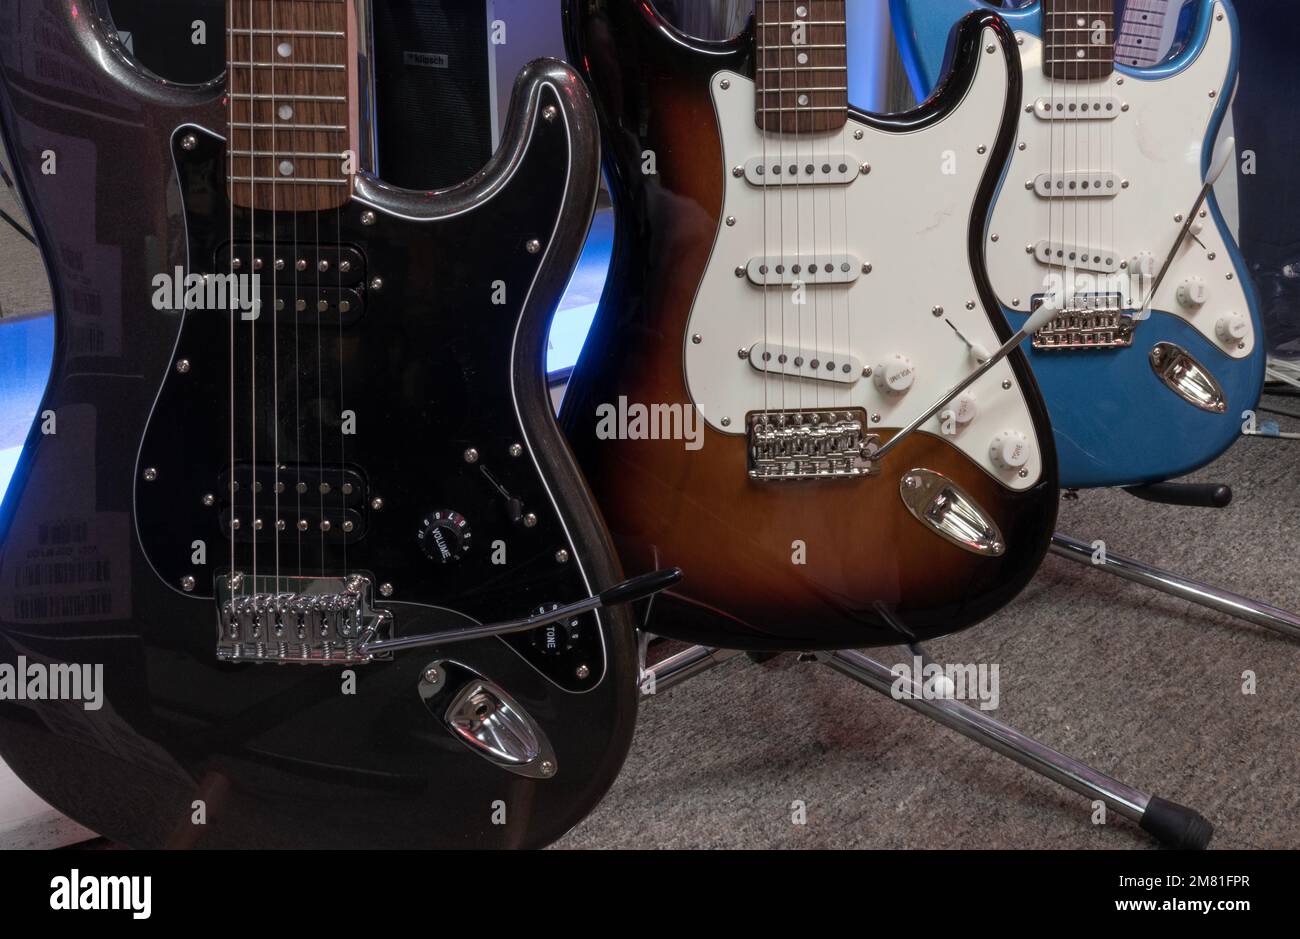 Lafayette - Circa décembre 2022: Fender Stratocaster guitare exposition dans un magasin de musique. Les strates sont mondialement connues pour leur son propre et original. Banque D'Images